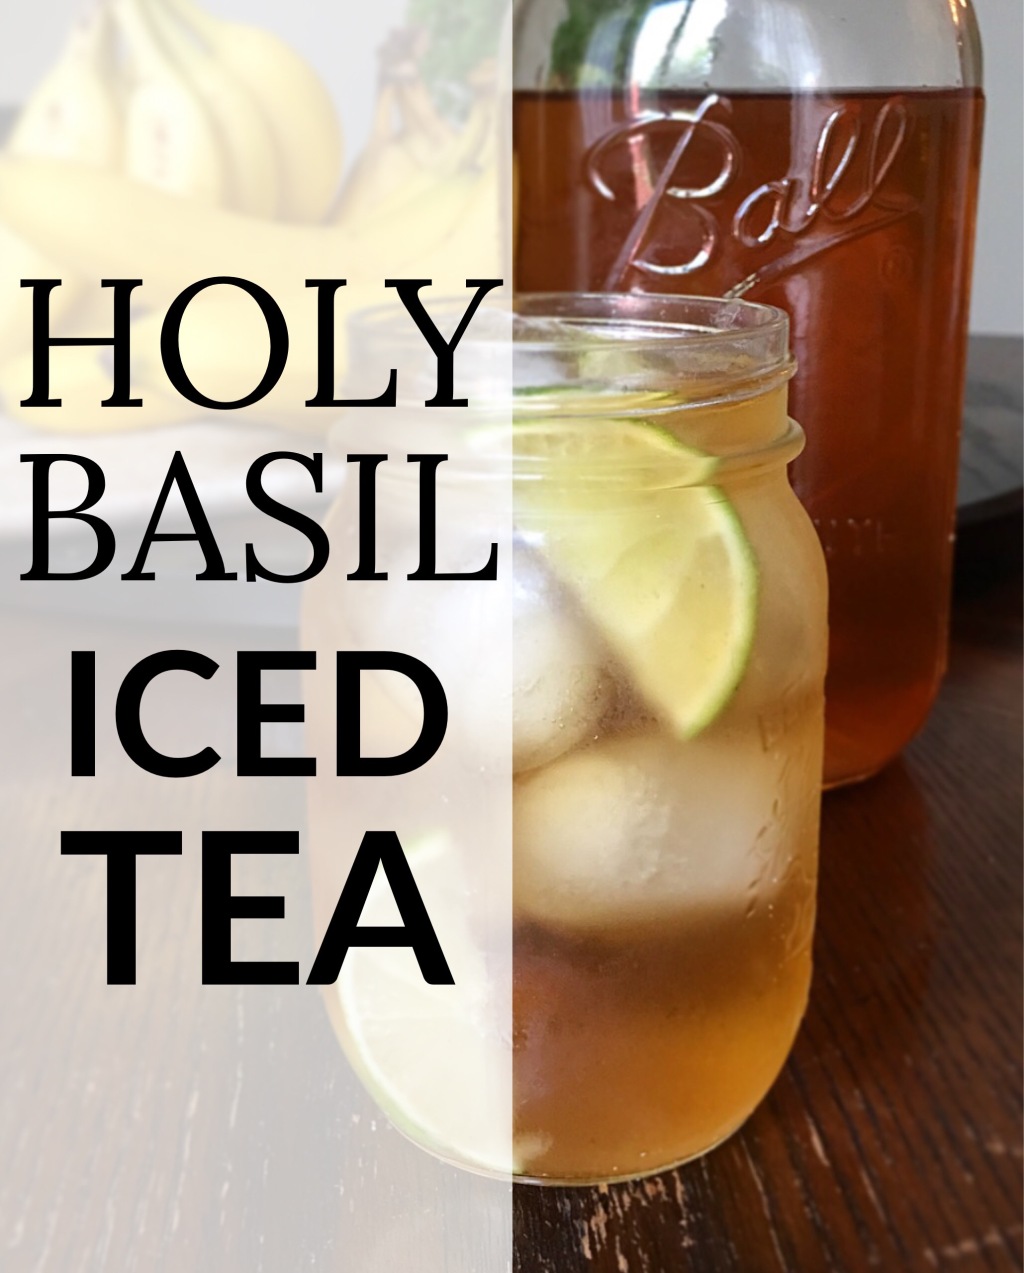 Holy Basil Iced Tea